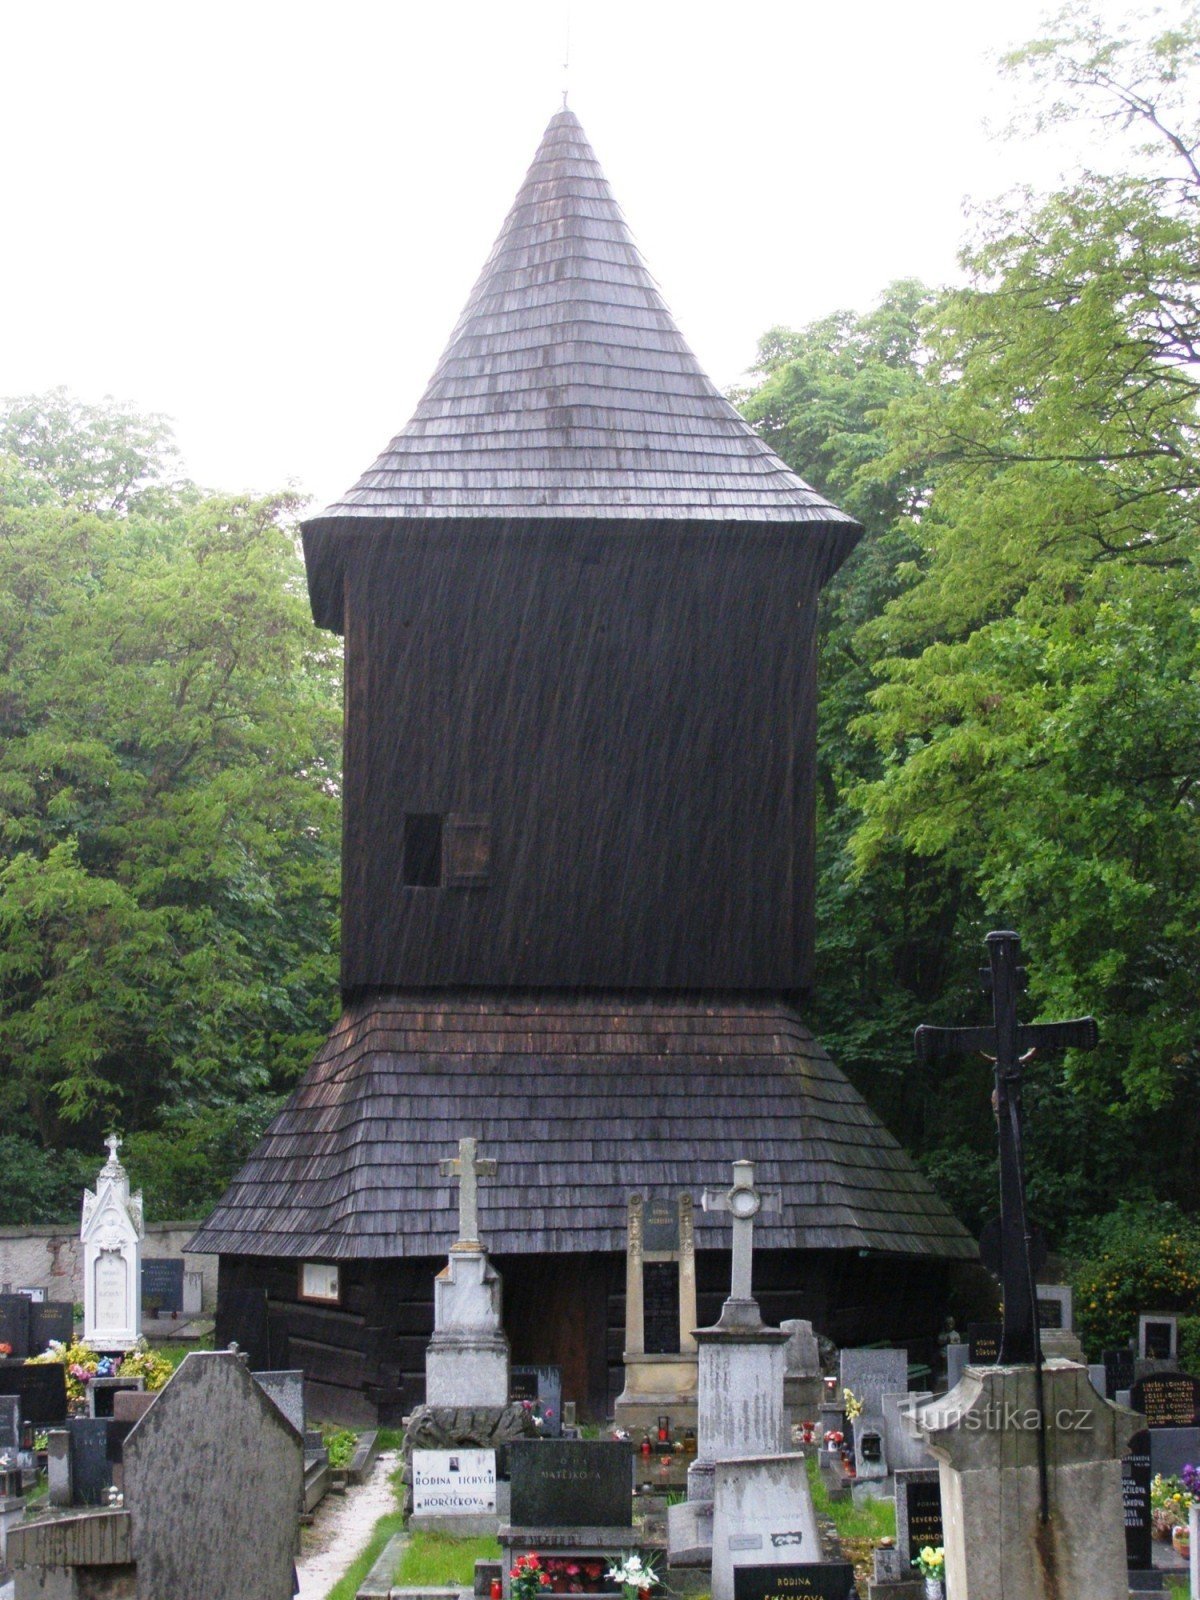 木造の聖教会の鐘楼。 城の洗礼者ヨハネ